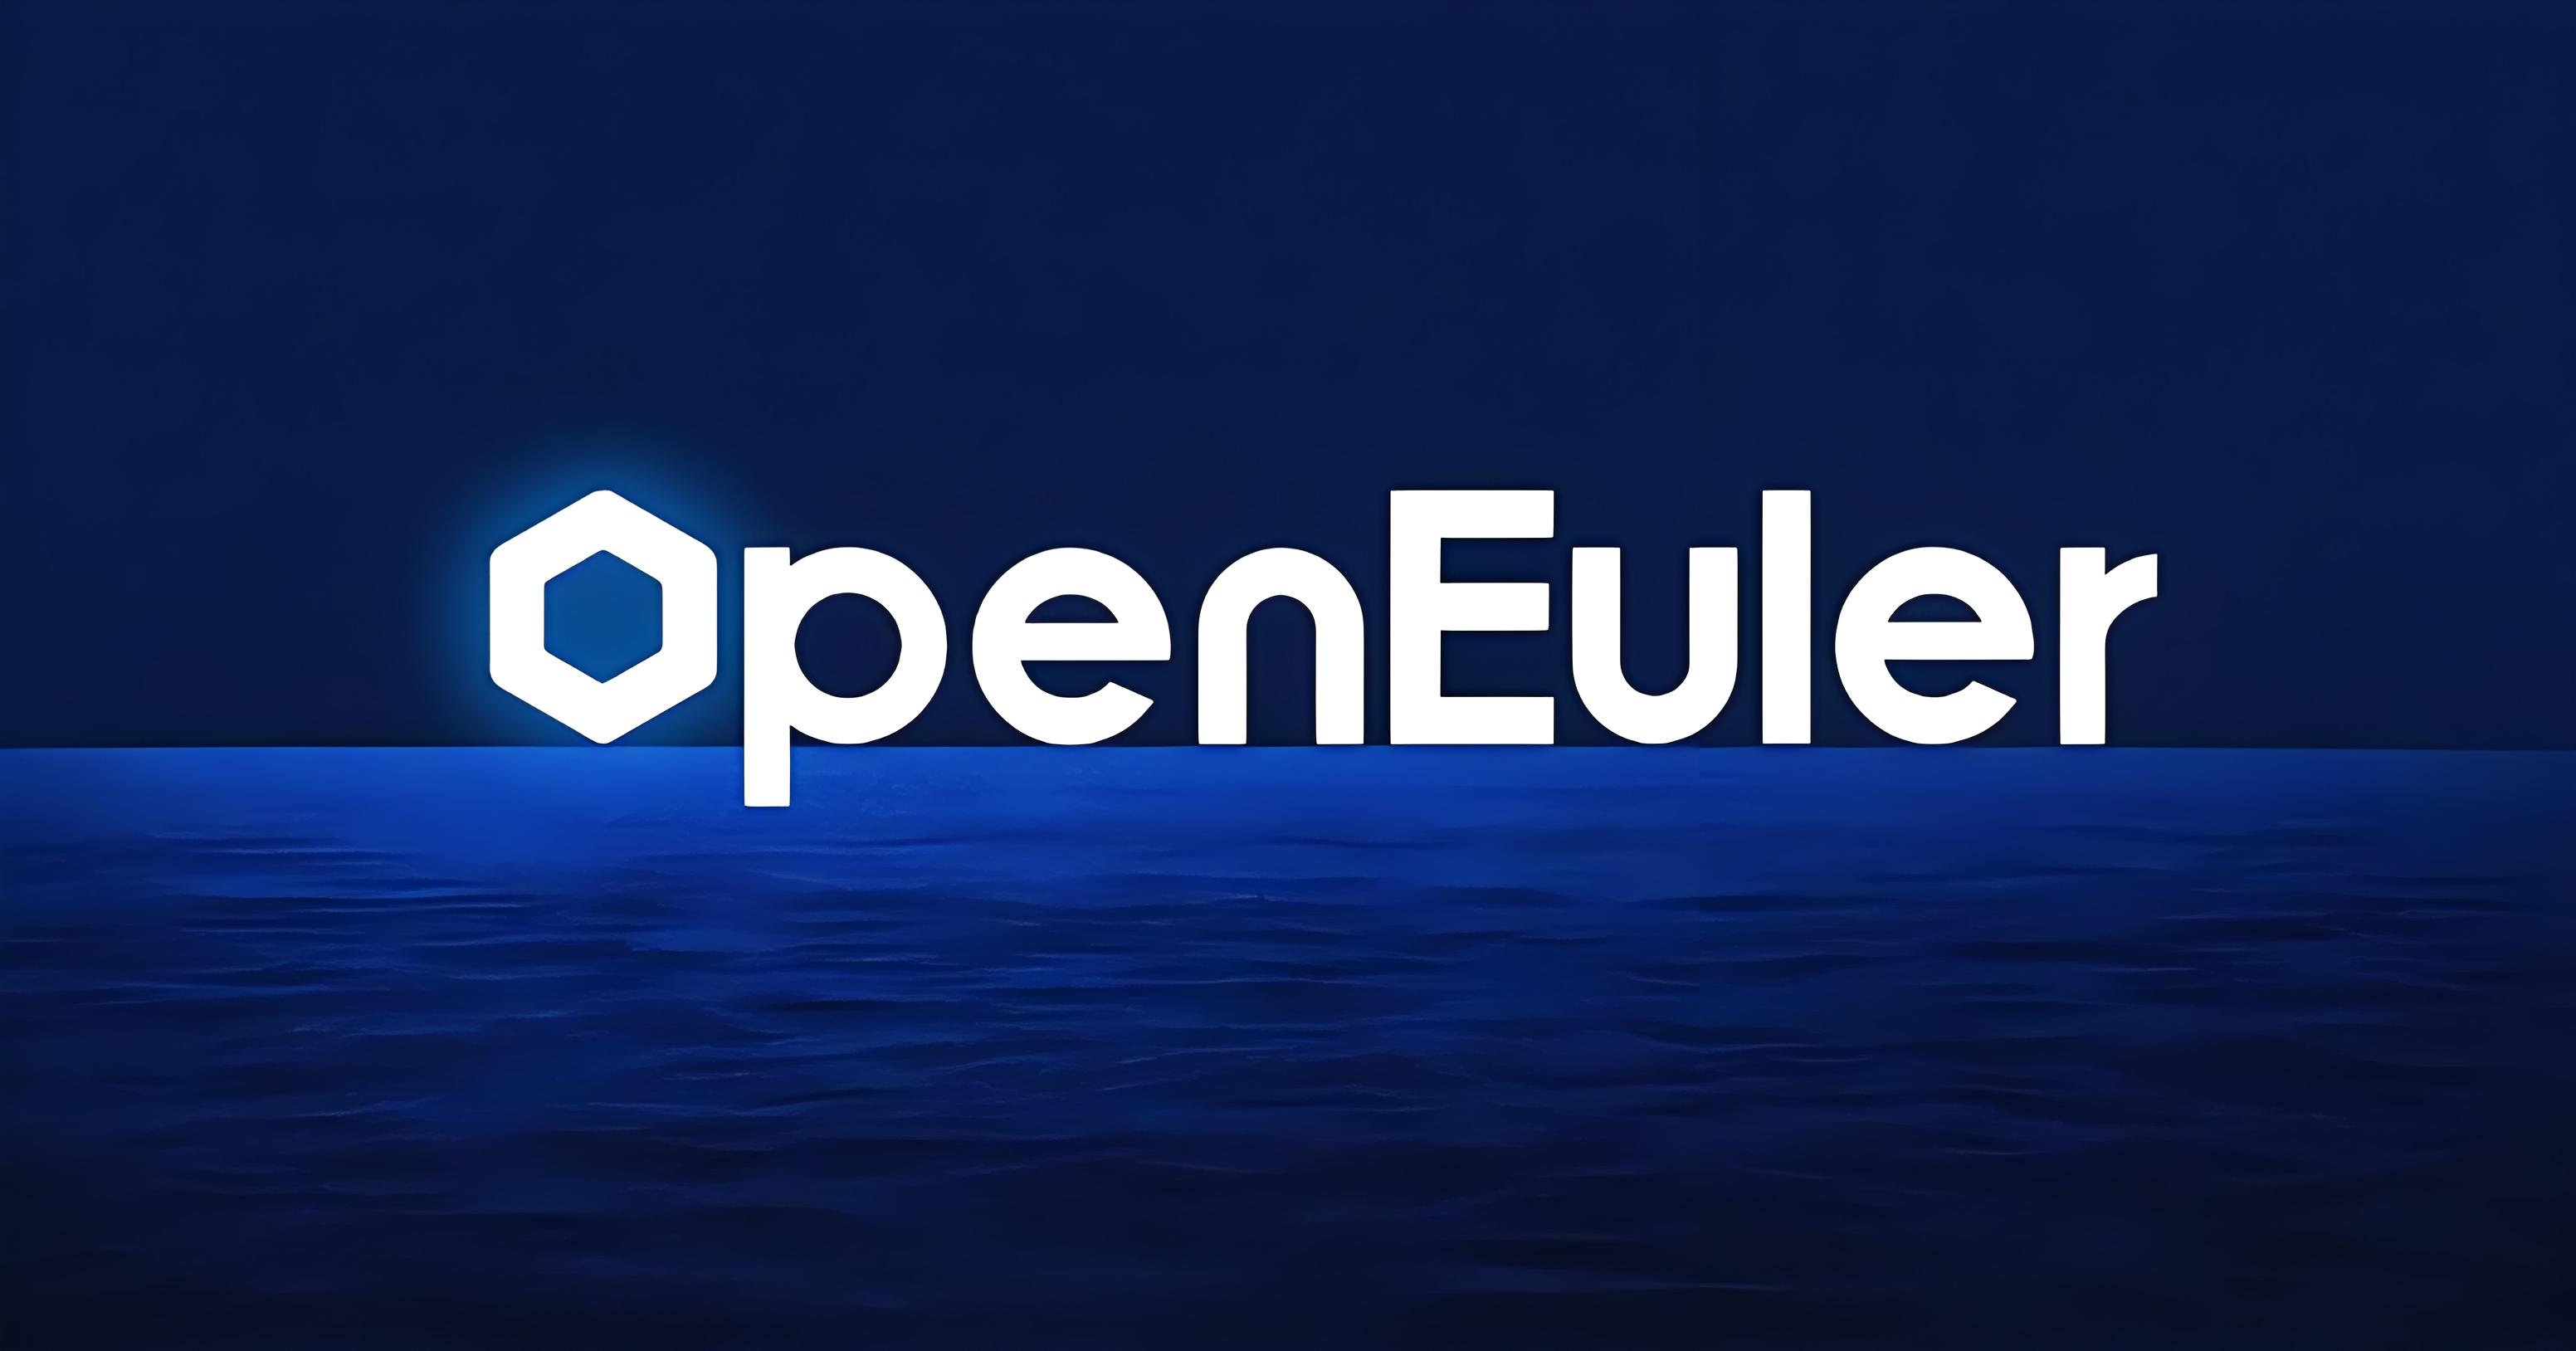 系统介绍 openEuler 是由开放原子开源基金会（OpenAtom Foundation）孵化及运营的开源项目。 openEuler是面向数字基础设施的操作系统，支持服务器、 云计算、边缘计算、嵌入式等应用场景，支持多样性计算，致力于提供安全、稳定、易用的操作系统。通过为应用提供确定性保障能力，